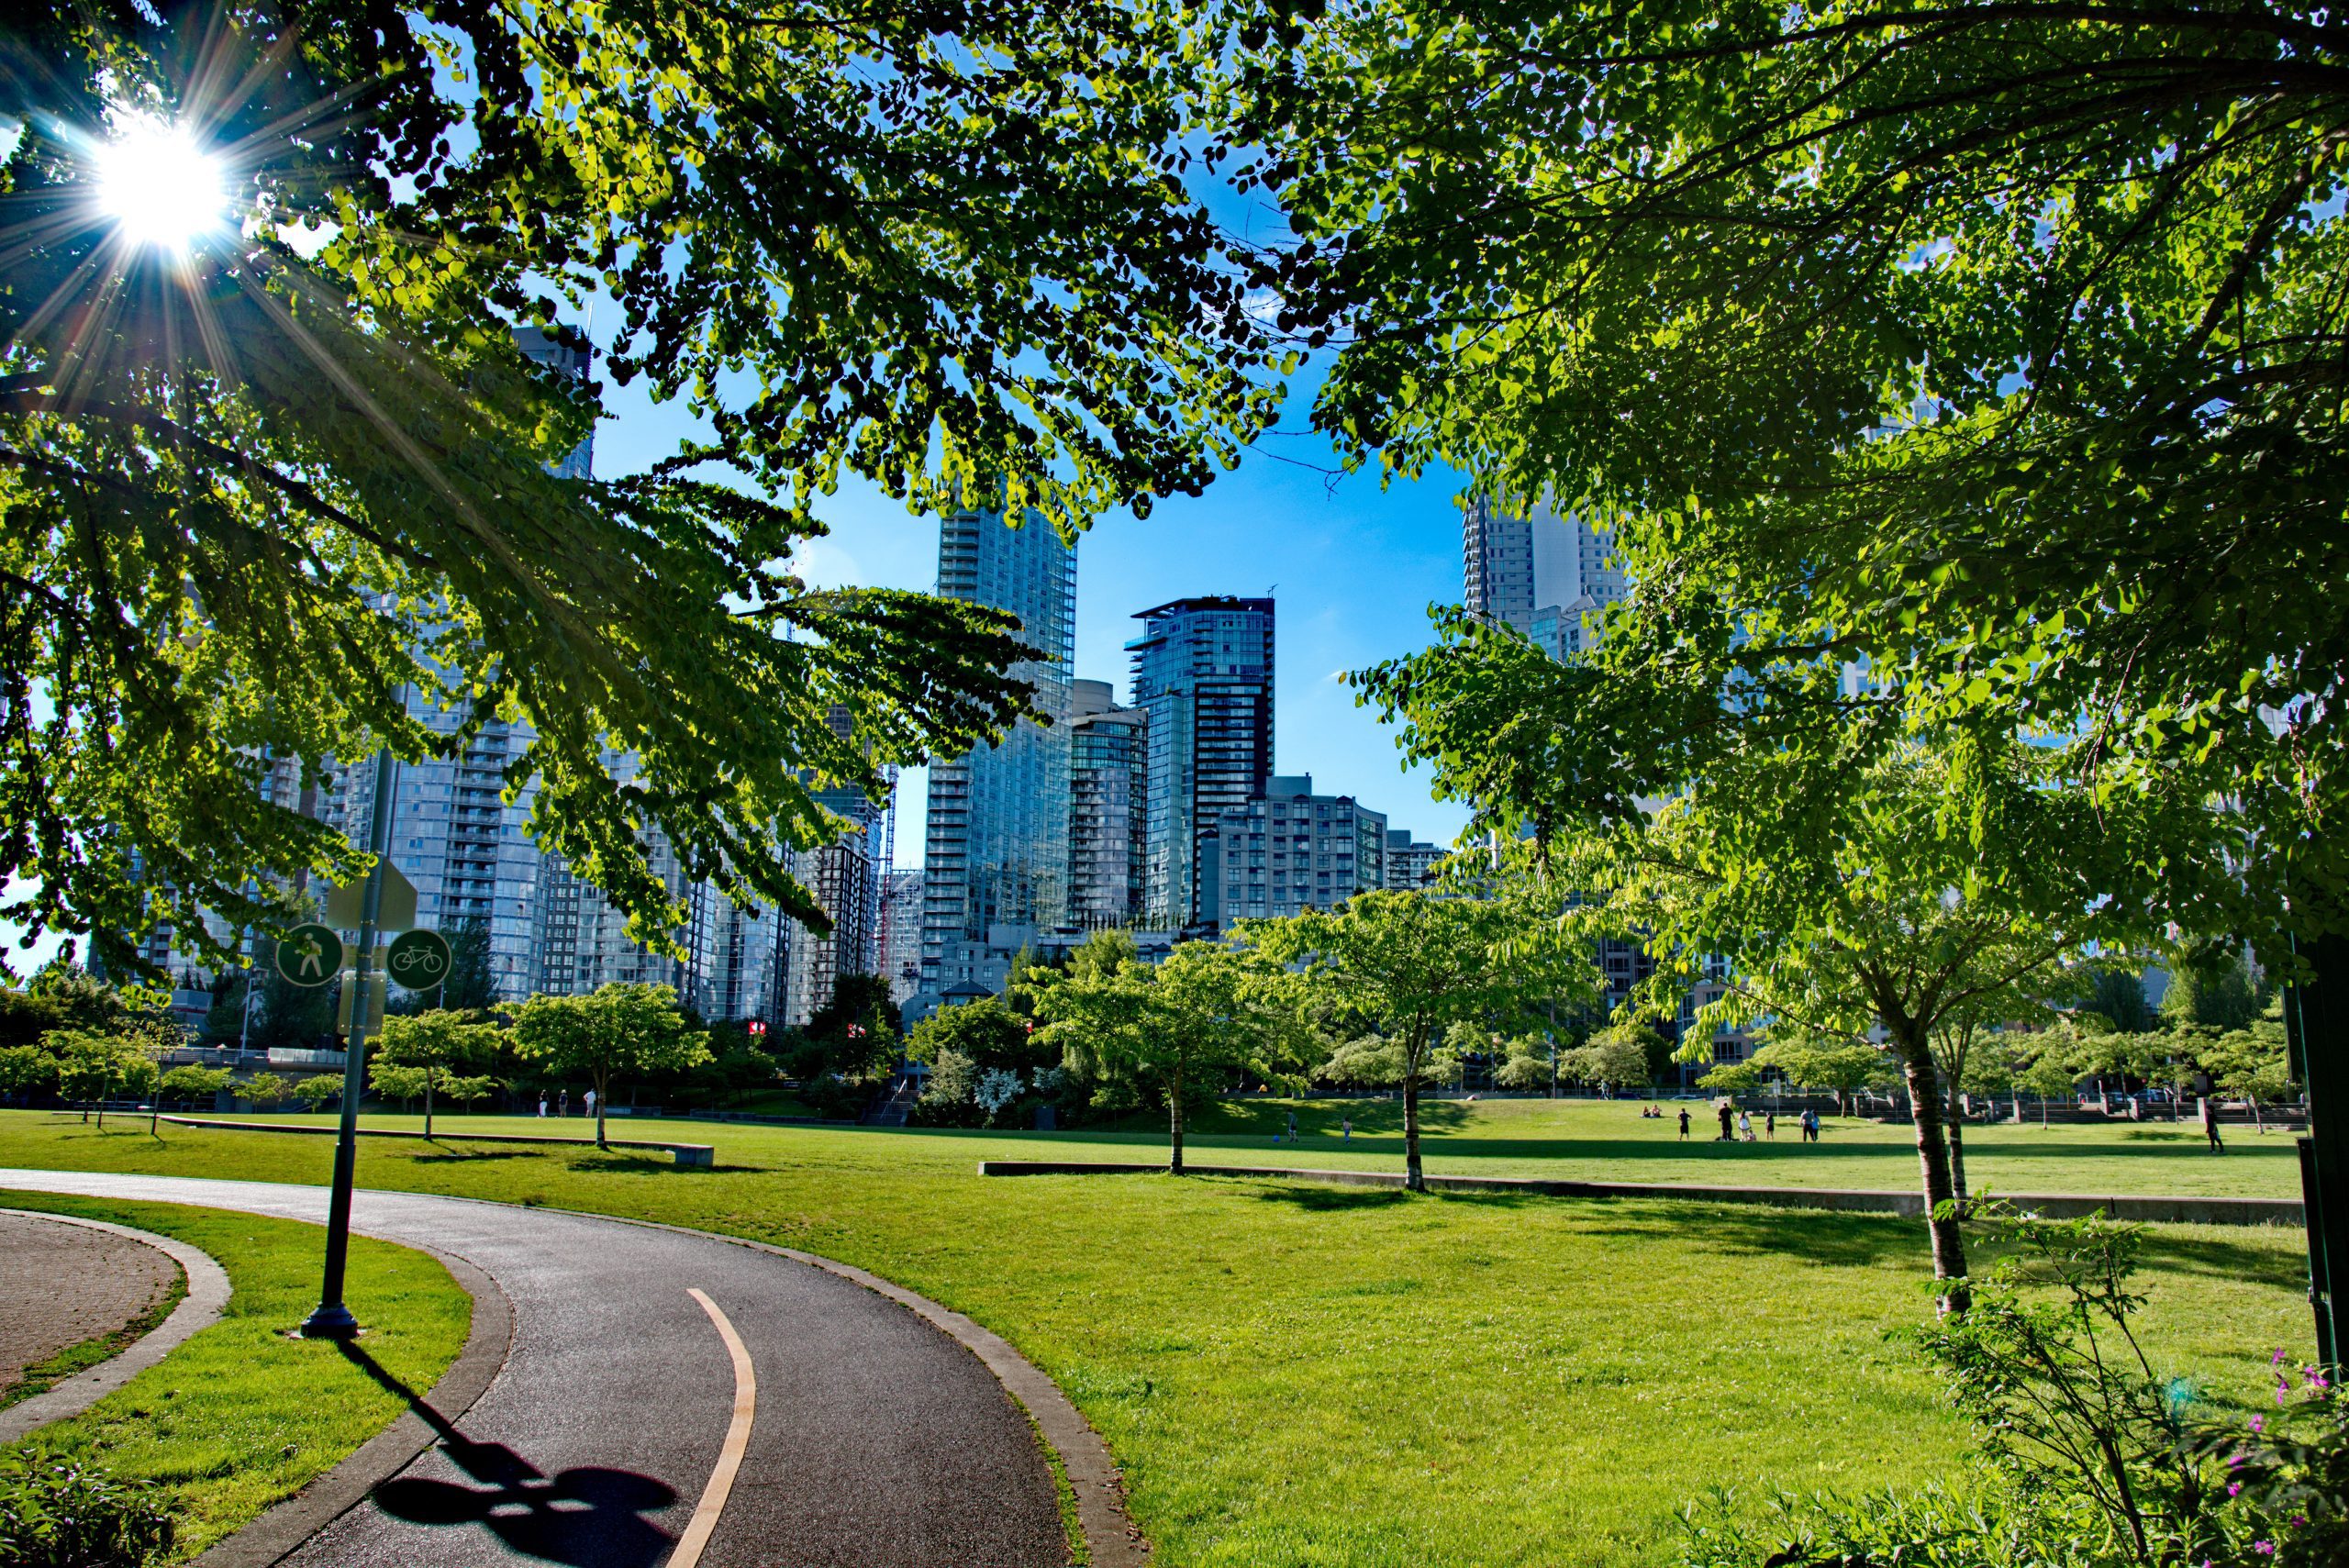 David Lam Park Vancouver picnic spots